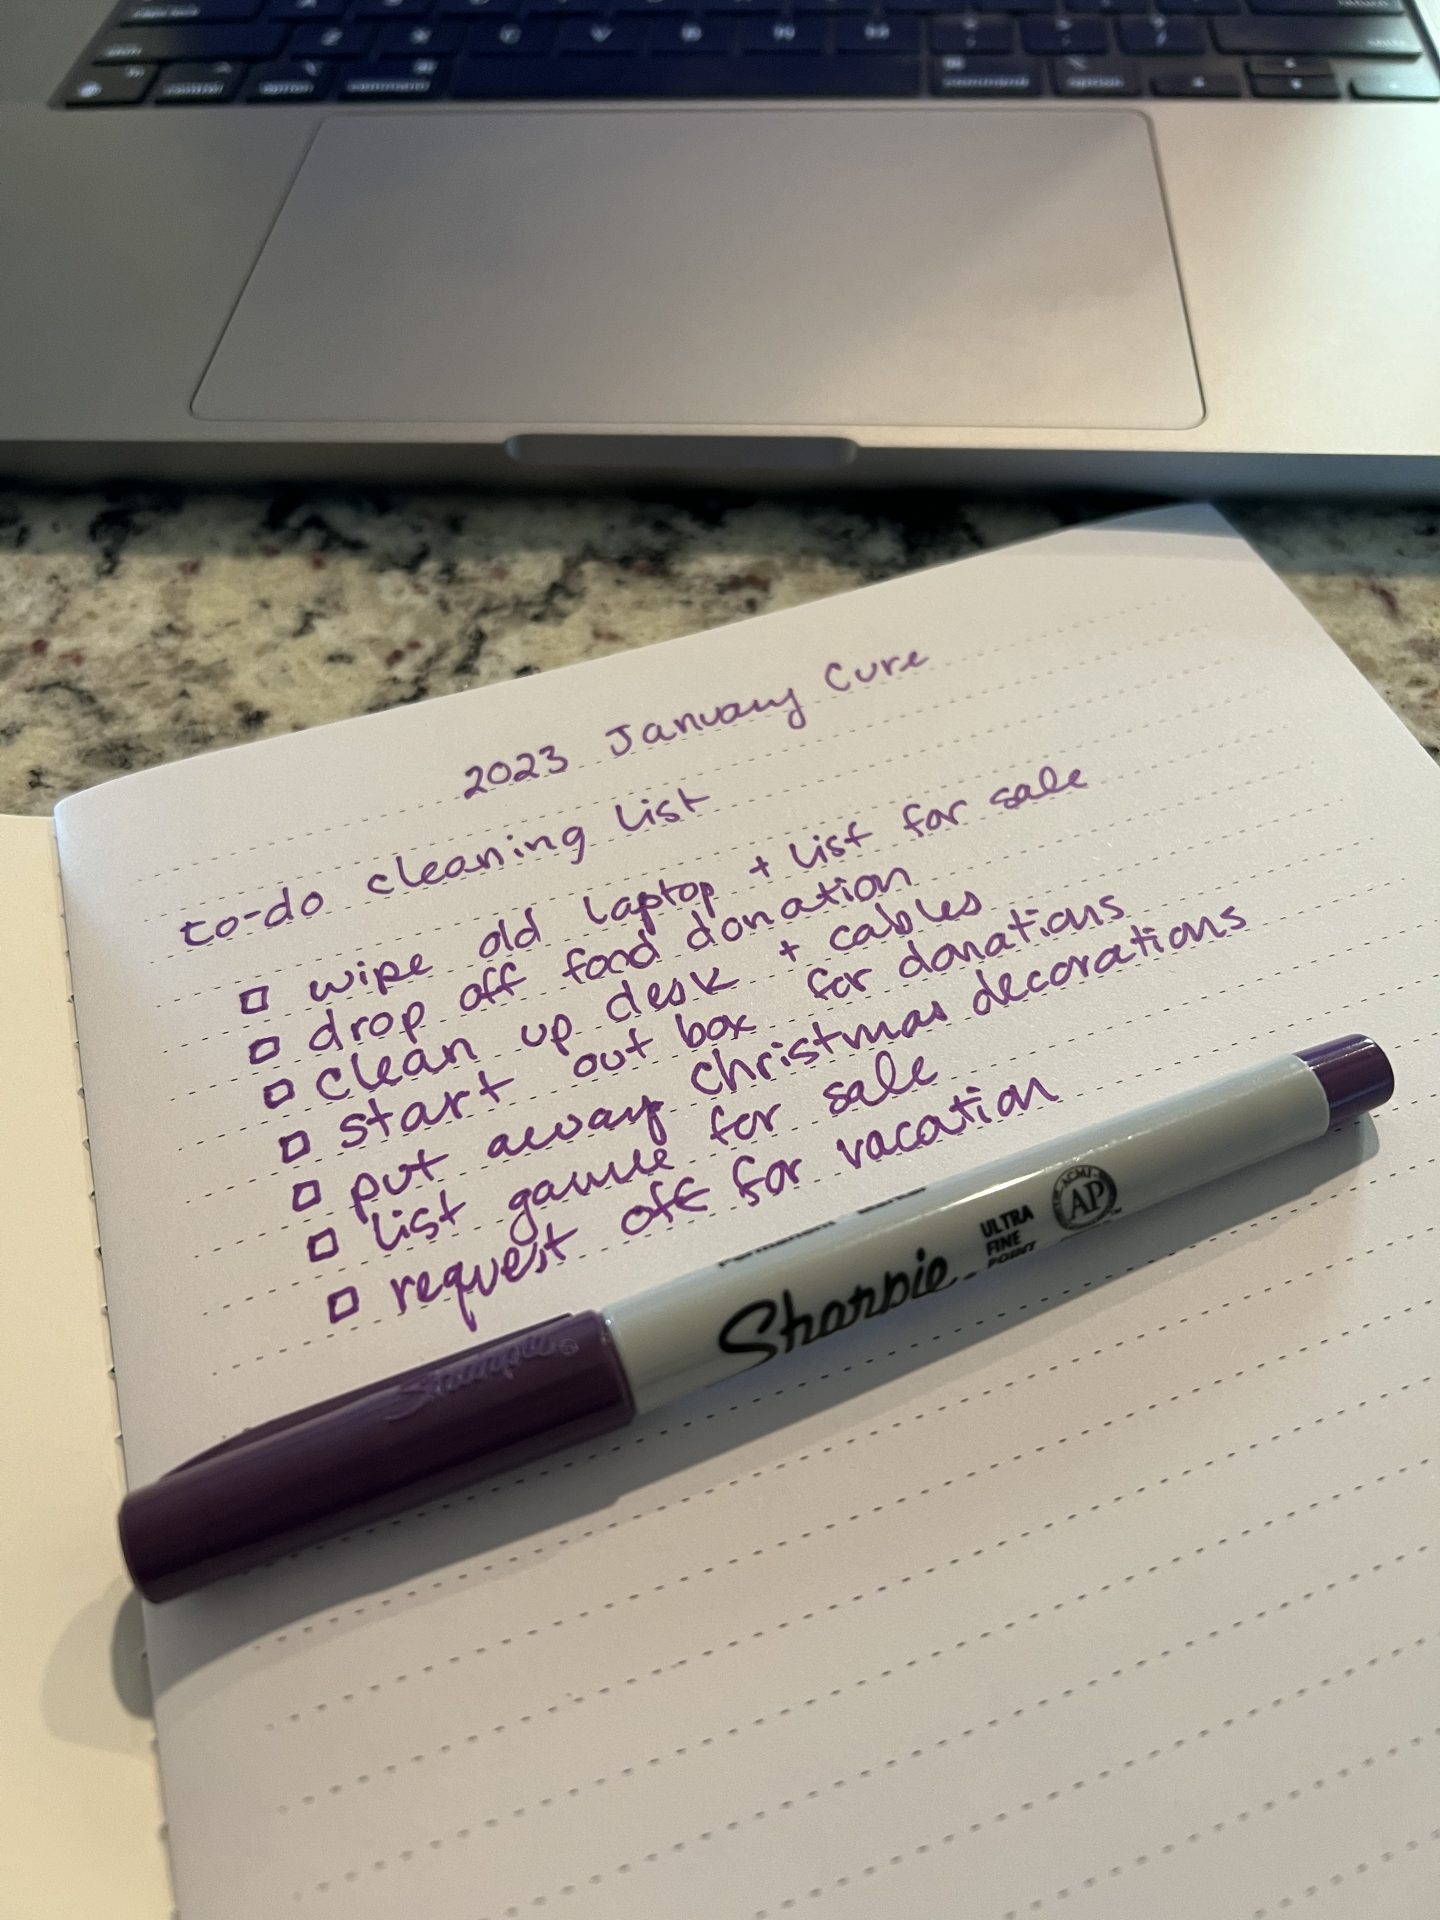 January Cure to-do list